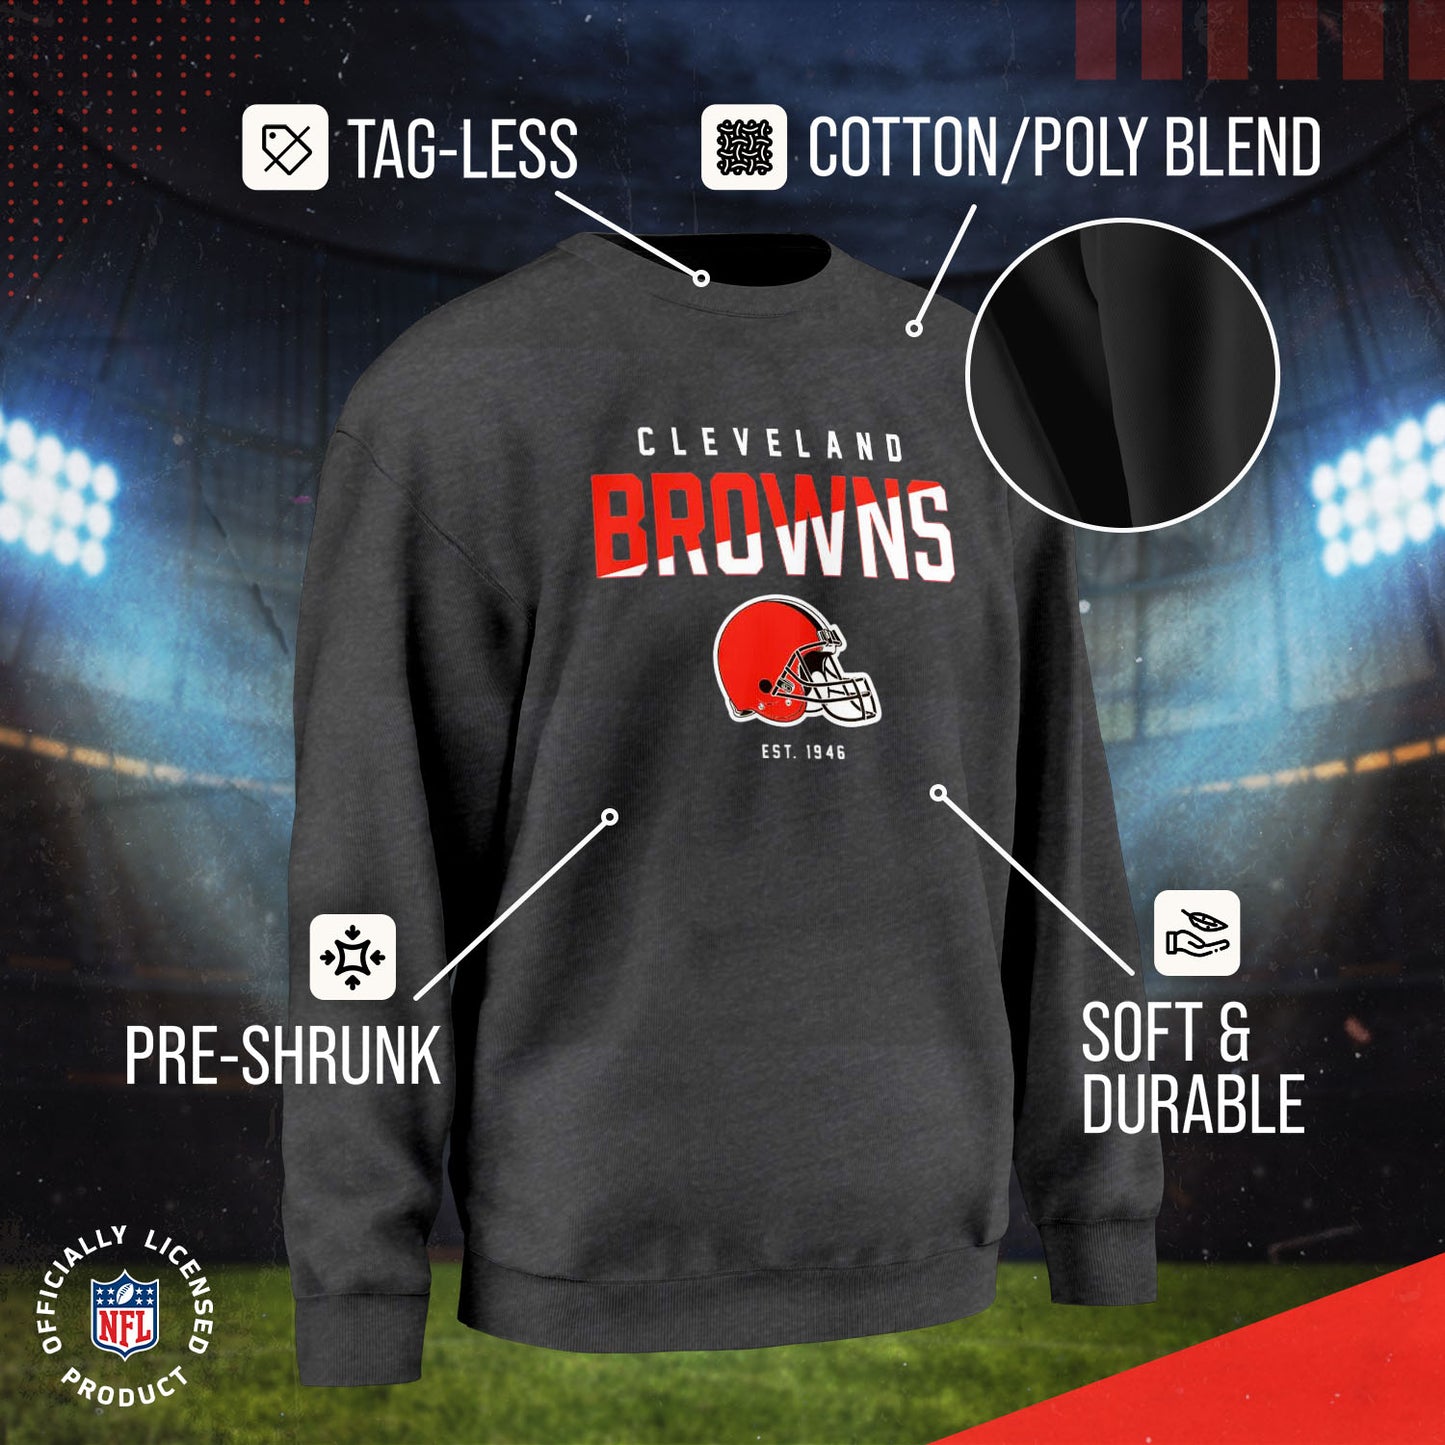 Cleveland Browns Adult NFL Diagonal Fade Color Block Crewneck Sweatshirt - Charcoal